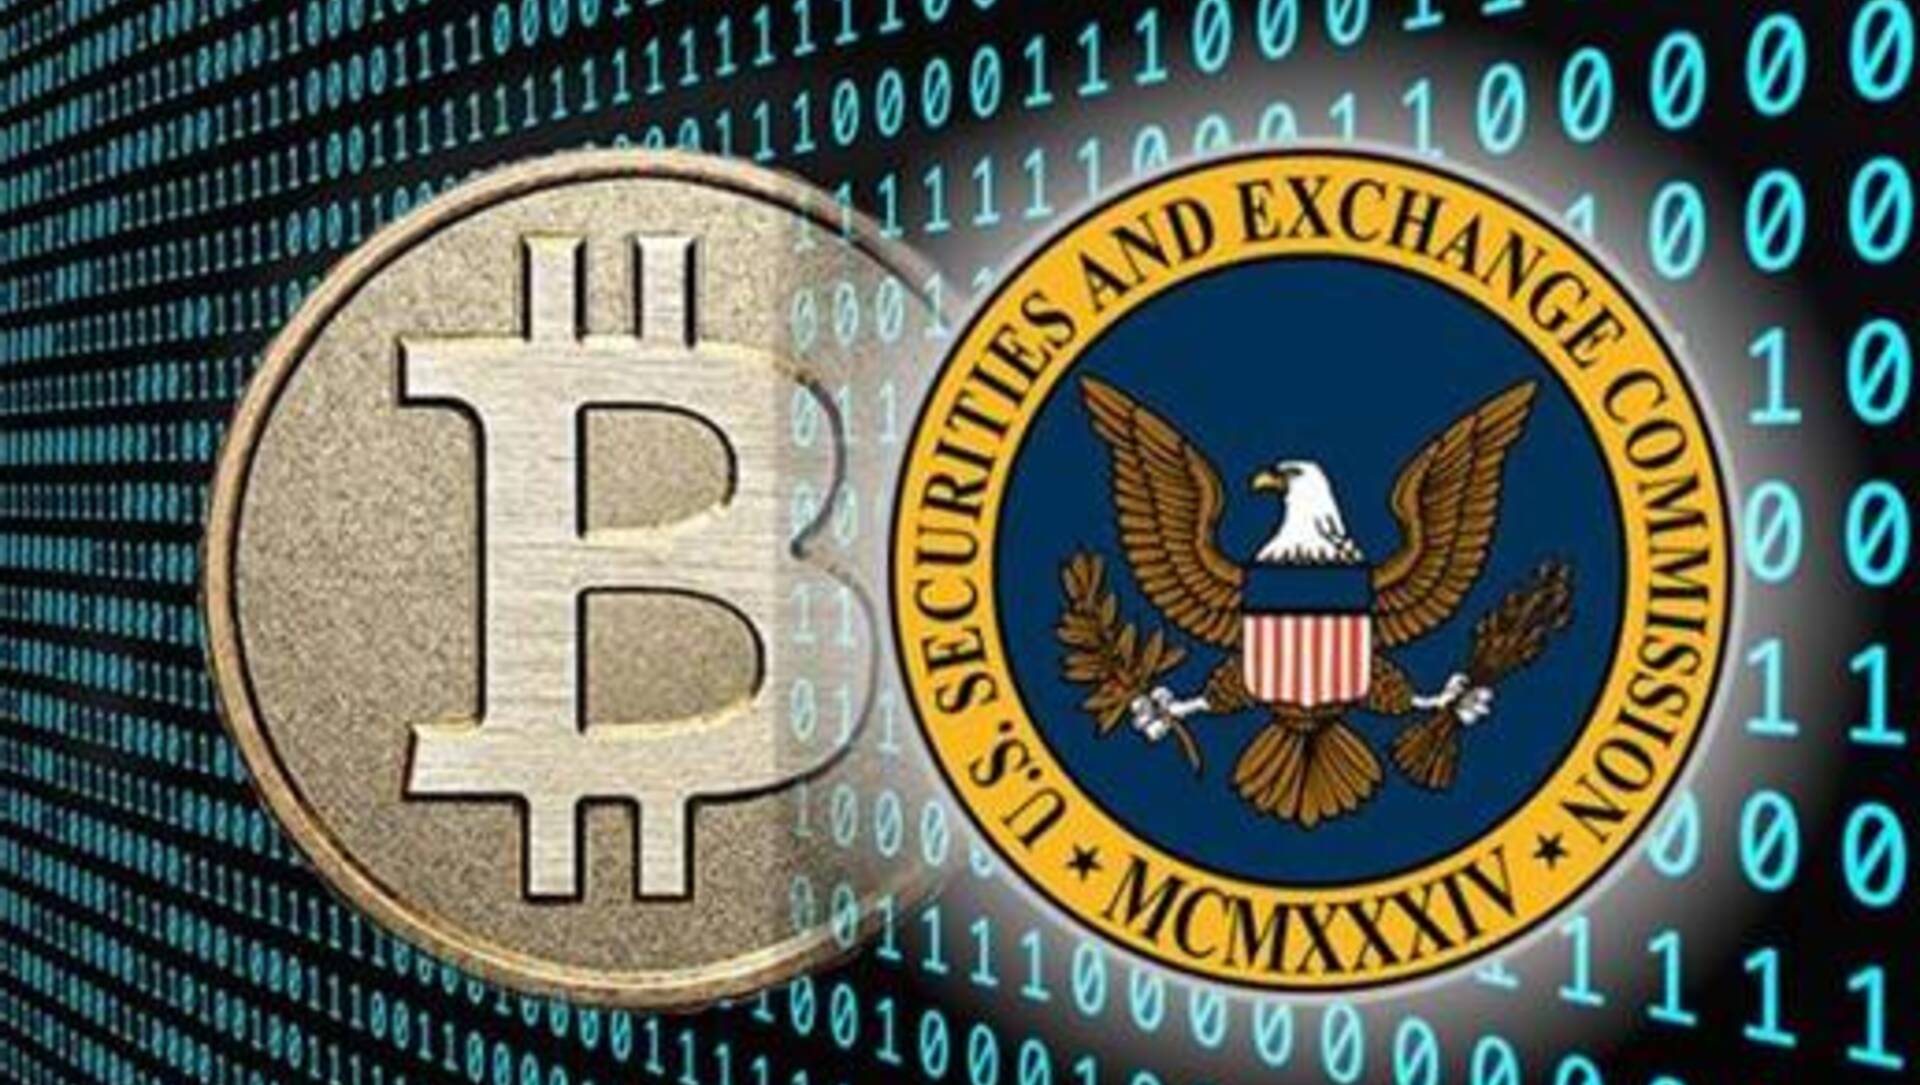 La scadenza per l’ETF Bitcoin per Hashdex e Franklin si avvicina. ARK Invest introduce una commissione dello 0,8% per il suo ETF BTC!